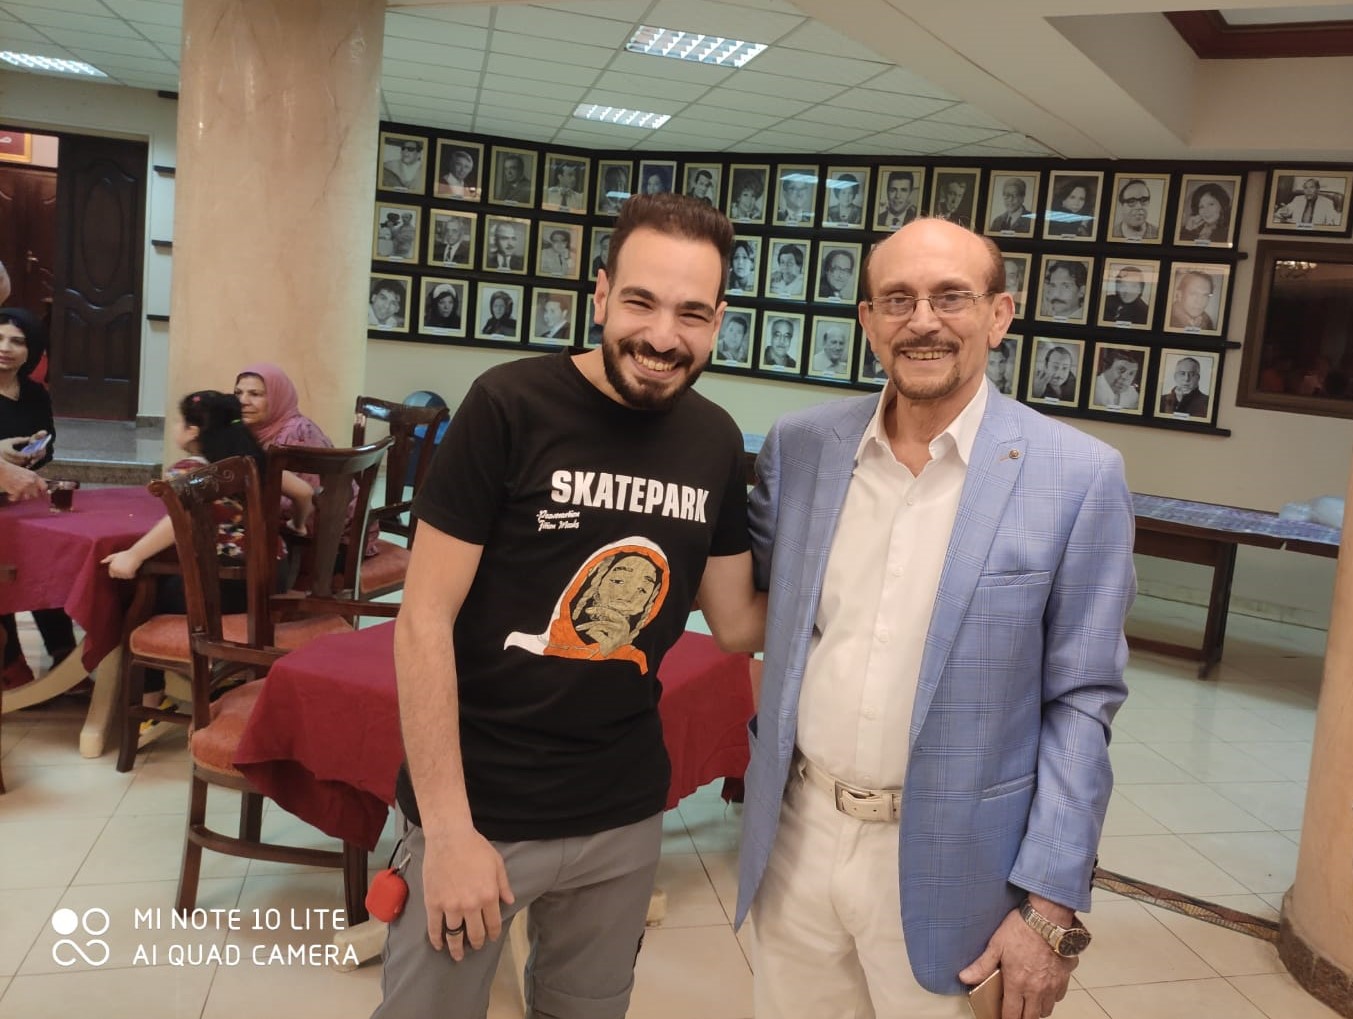 النجم محمد صبحي يقيم إفطارا جماعيا لفرقة استيدو الممثل بمدينة سنبل  (4)